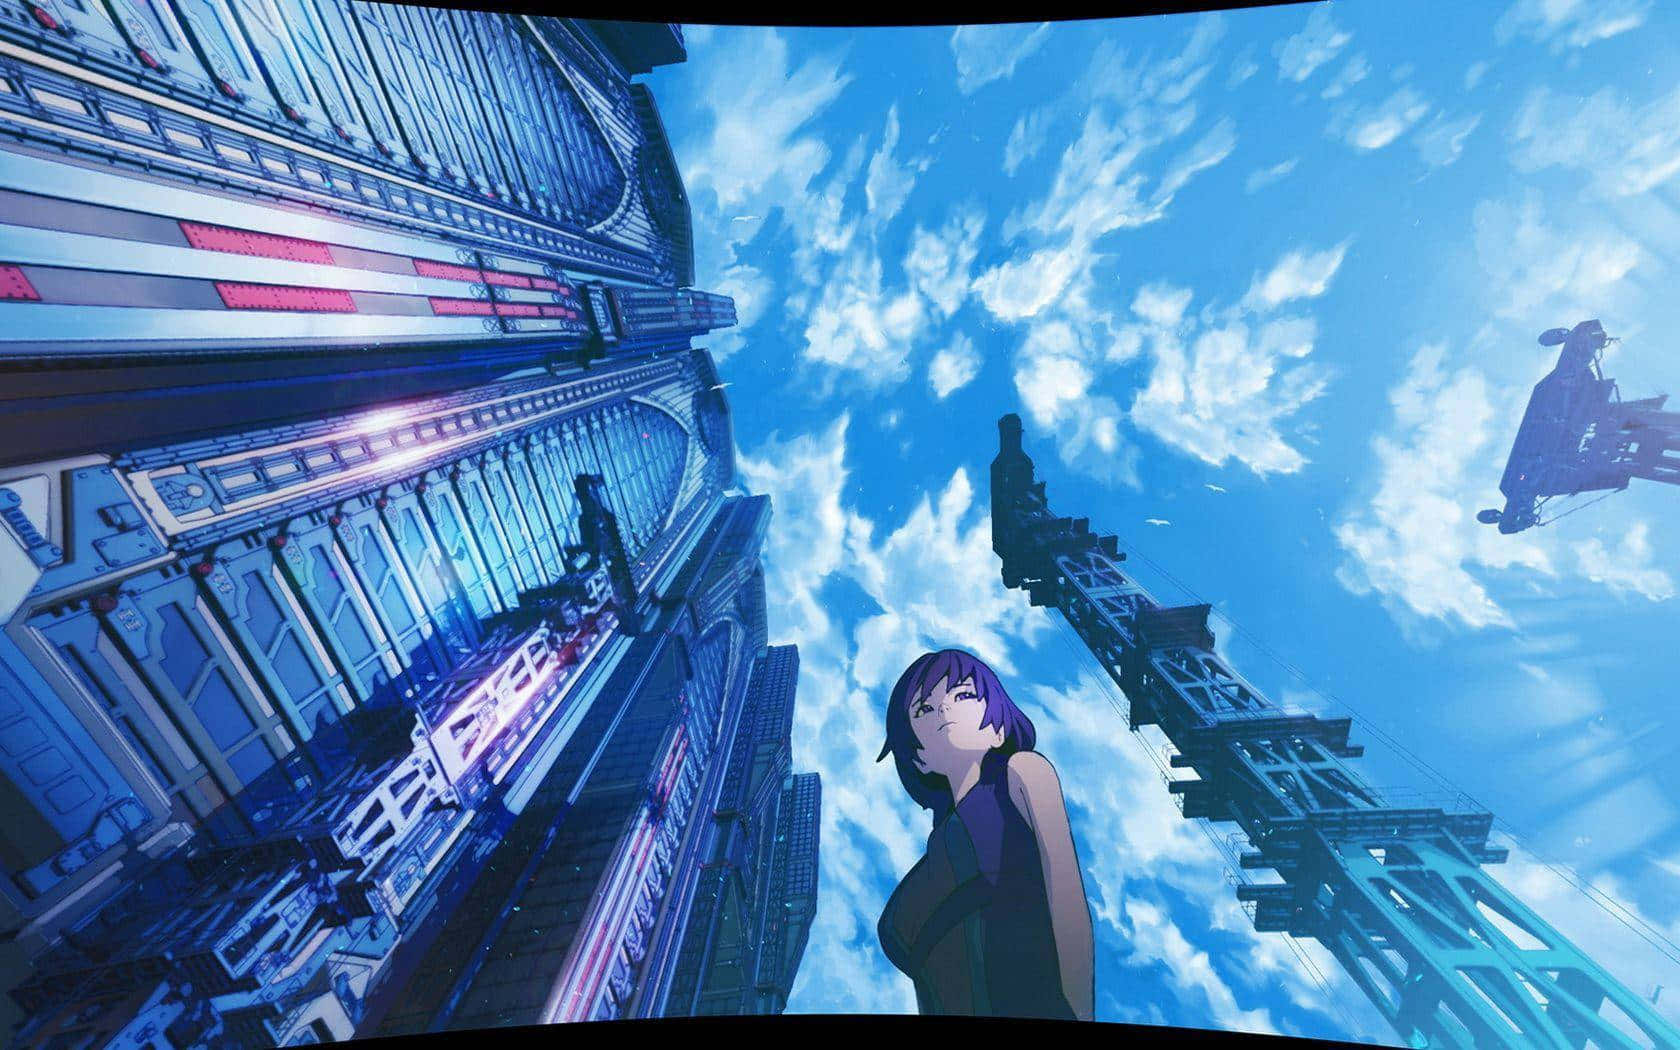 Animegebäude Mit Hoch Aufragenden Strukturen. Wallpaper